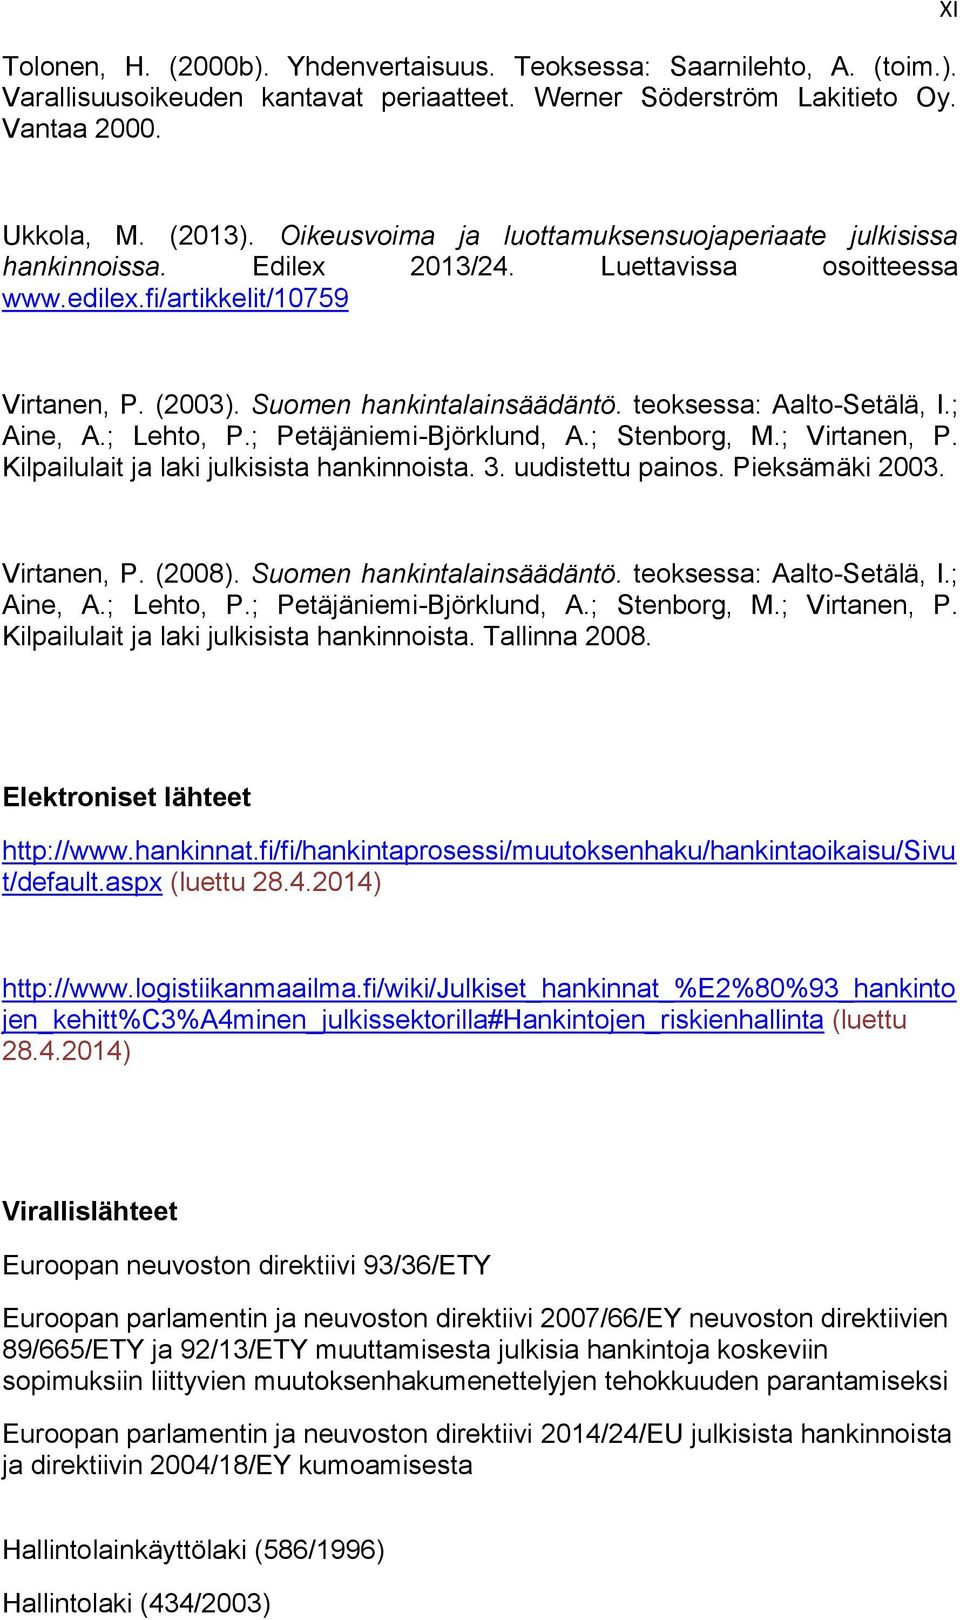 teoksessa: Aalto-Setälä, I.; Aine, A.; Lehto, P.; Petäjäniemi-Björklund, A.; Stenborg, M.; Virtanen, P. Kilpailulait ja laki julkisista hankinnoista. 3. uudistettu painos. Pieksämäki 2003.